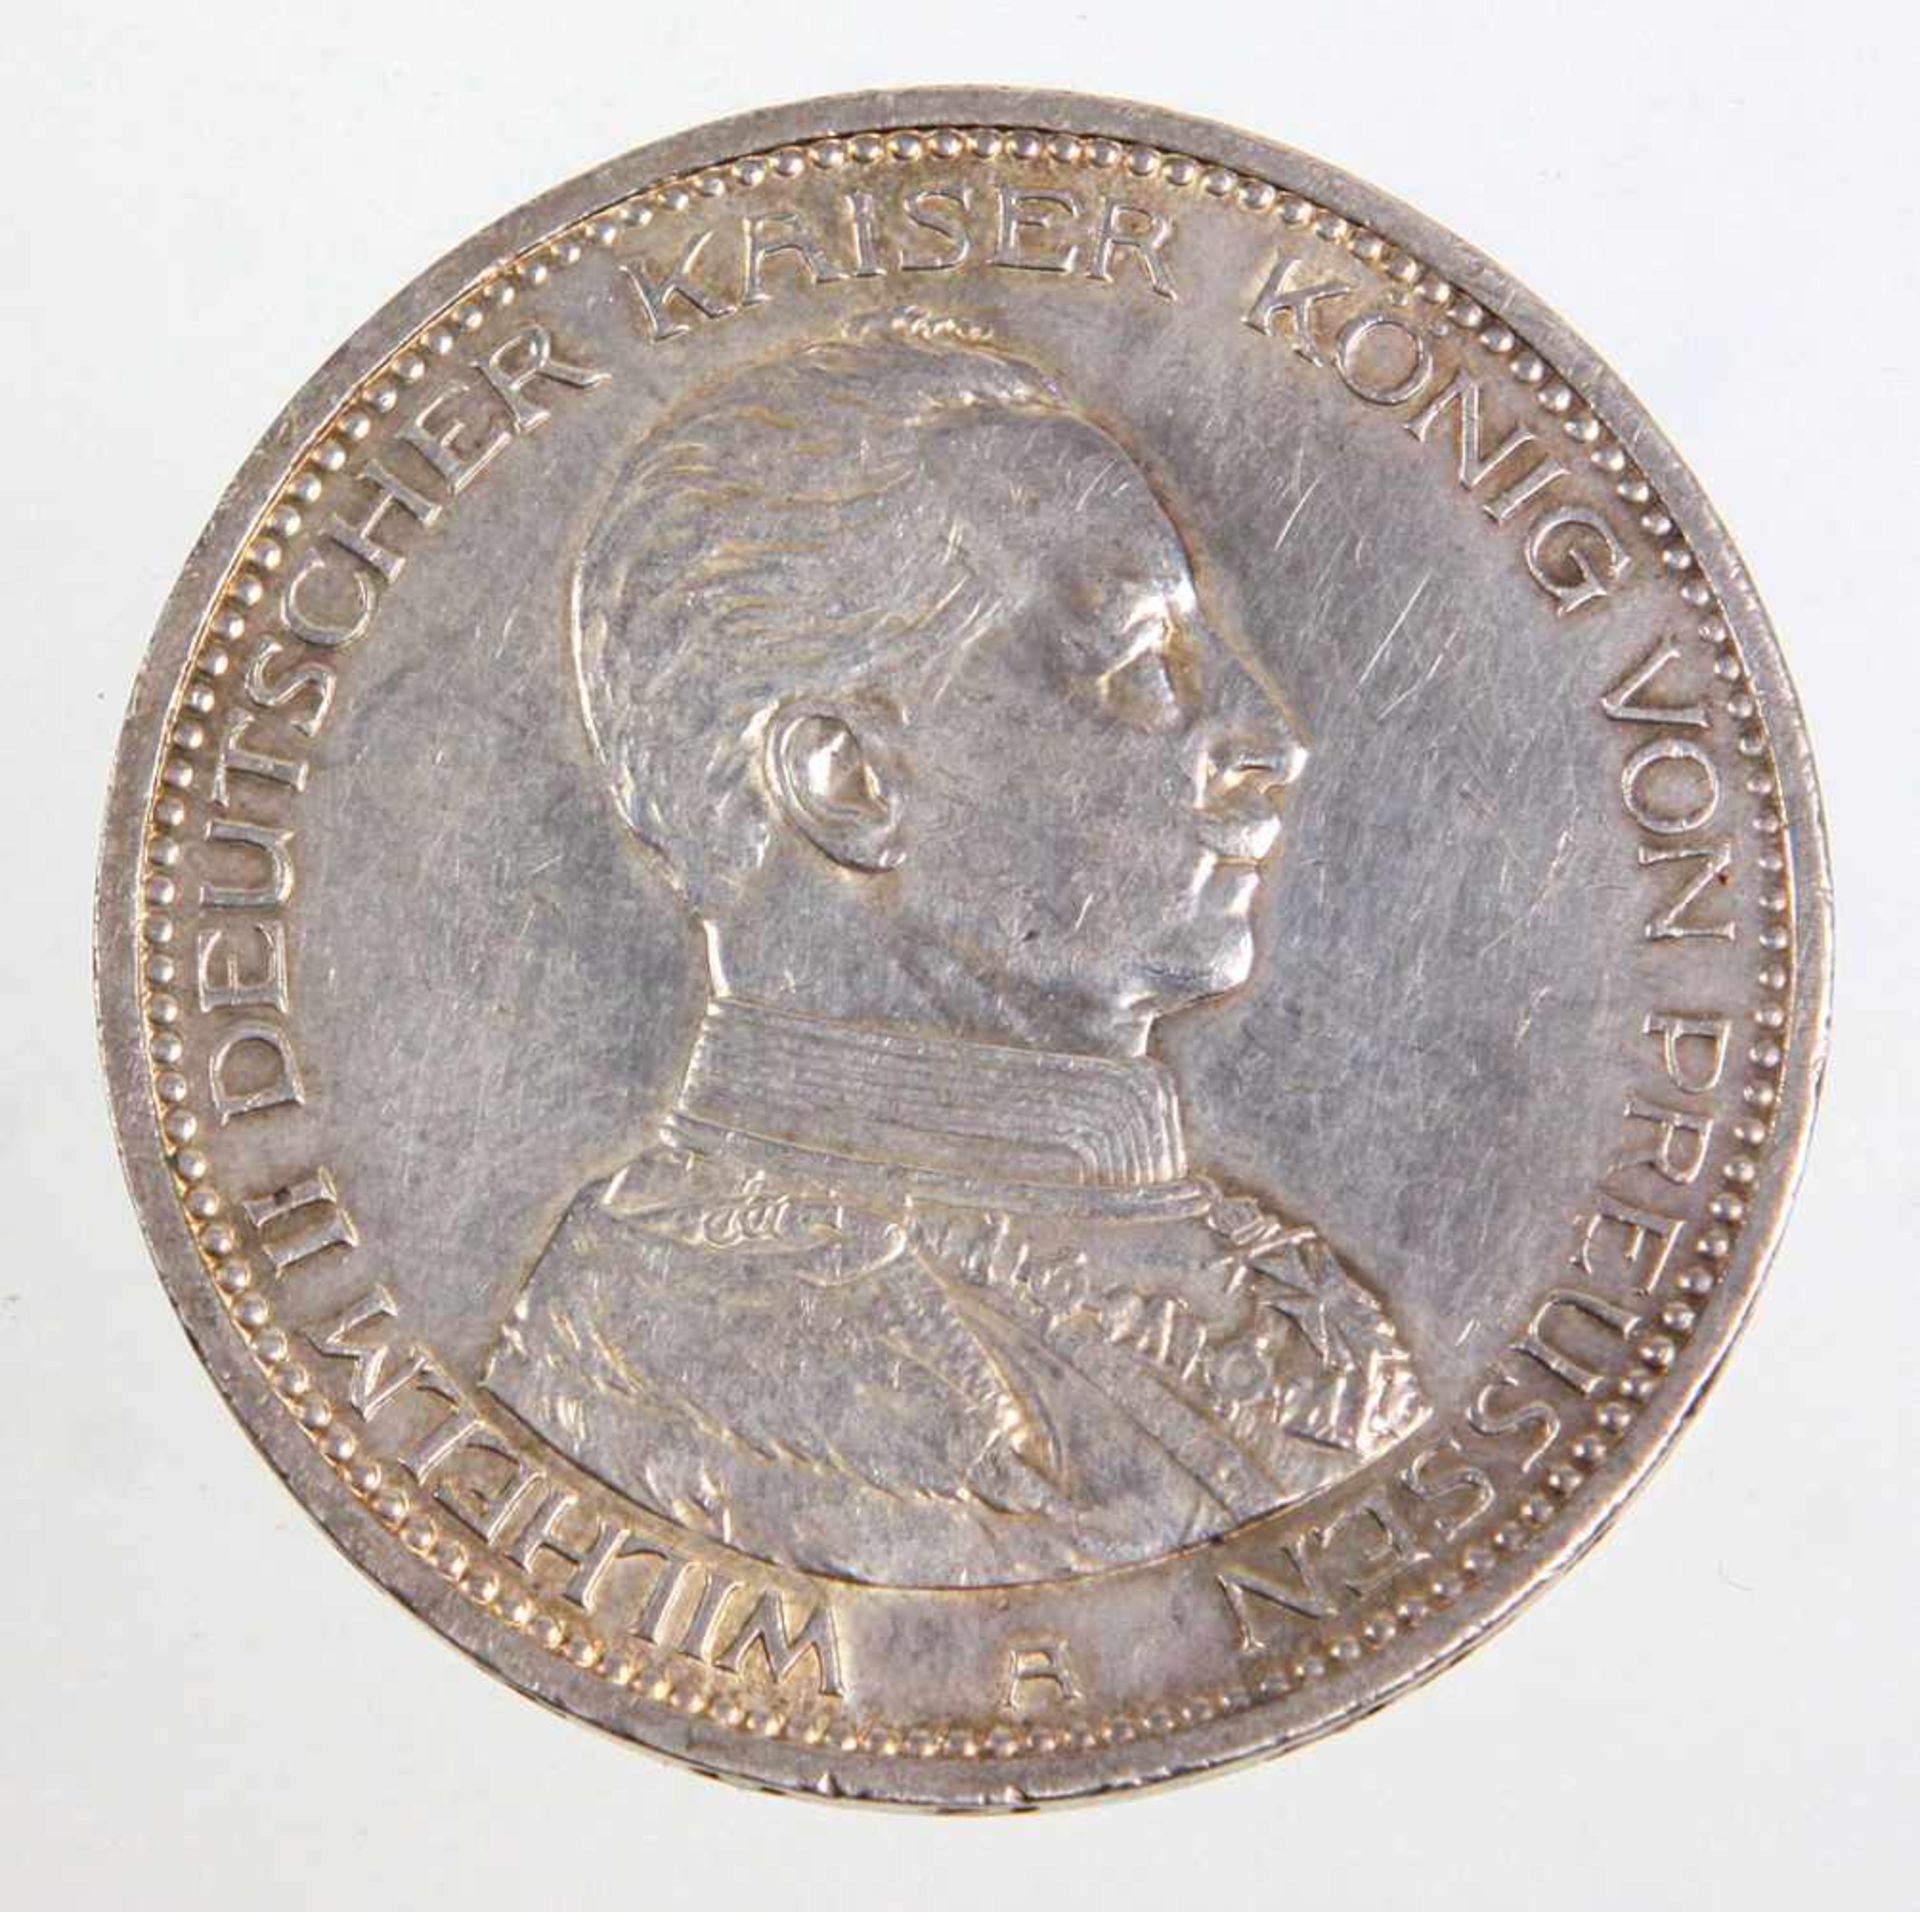 5 Mark Wilhelm II Preussen 1914 ASilbermünze Fünf Mark Deutsches Reich 1914, so um gekrönten